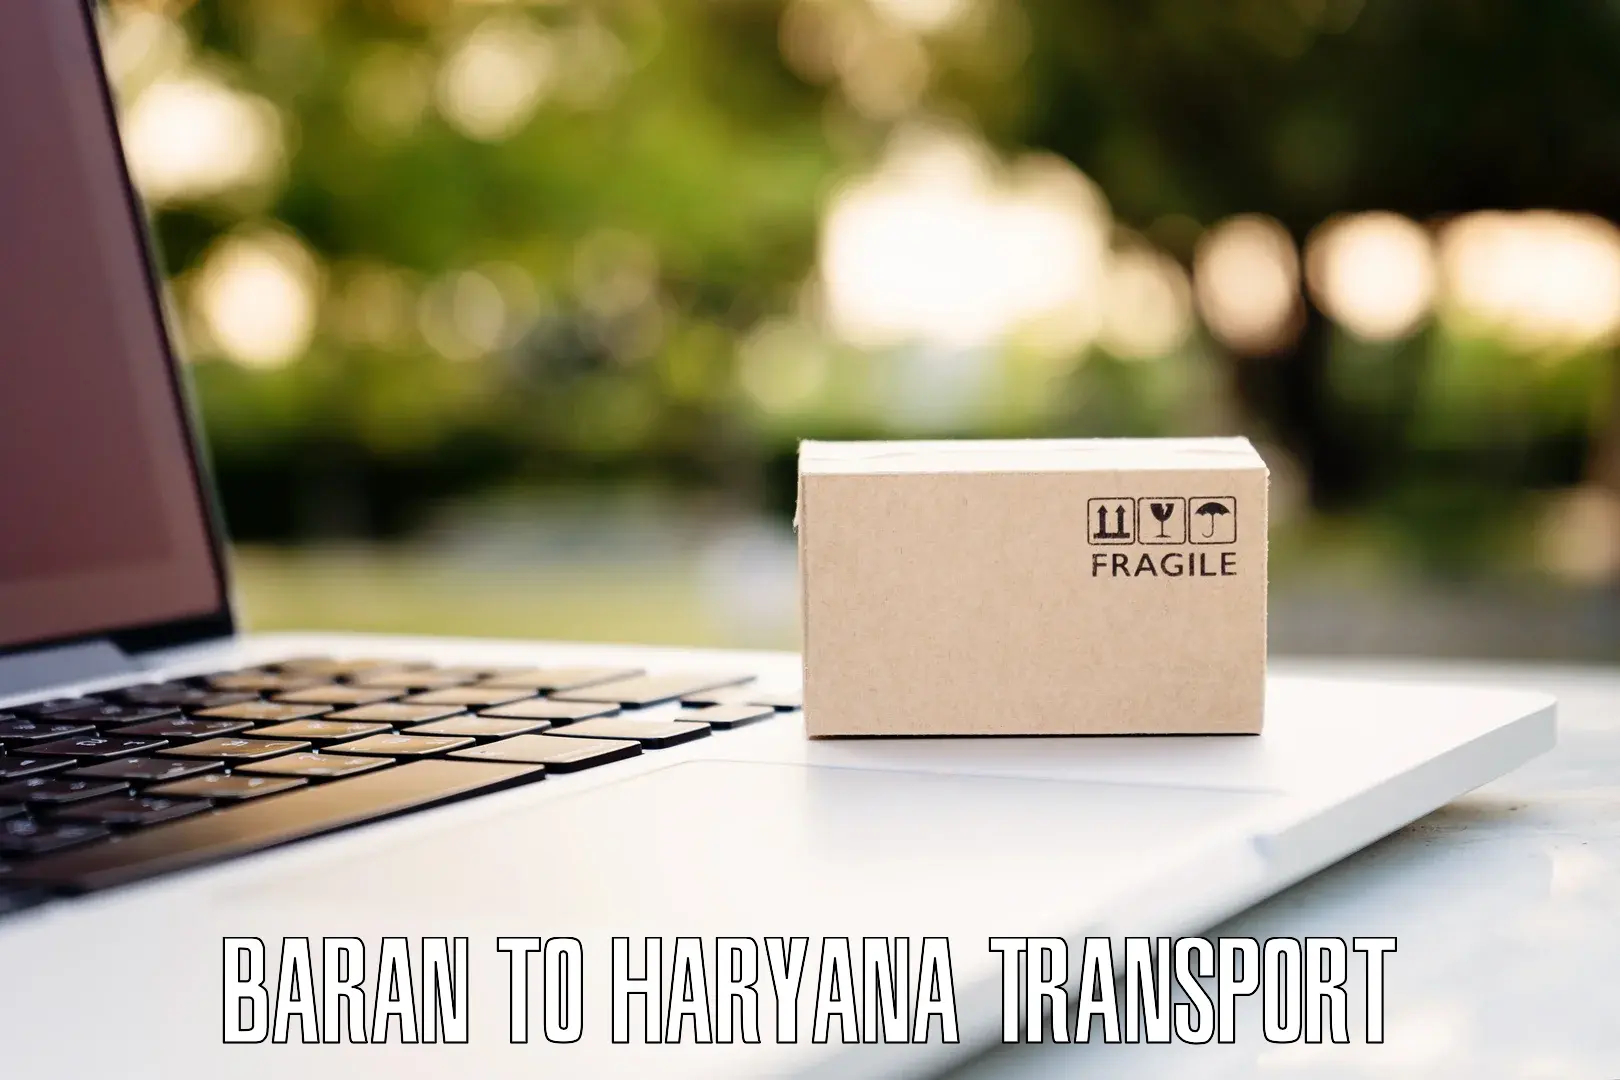 Road transport online services Baran to Jind